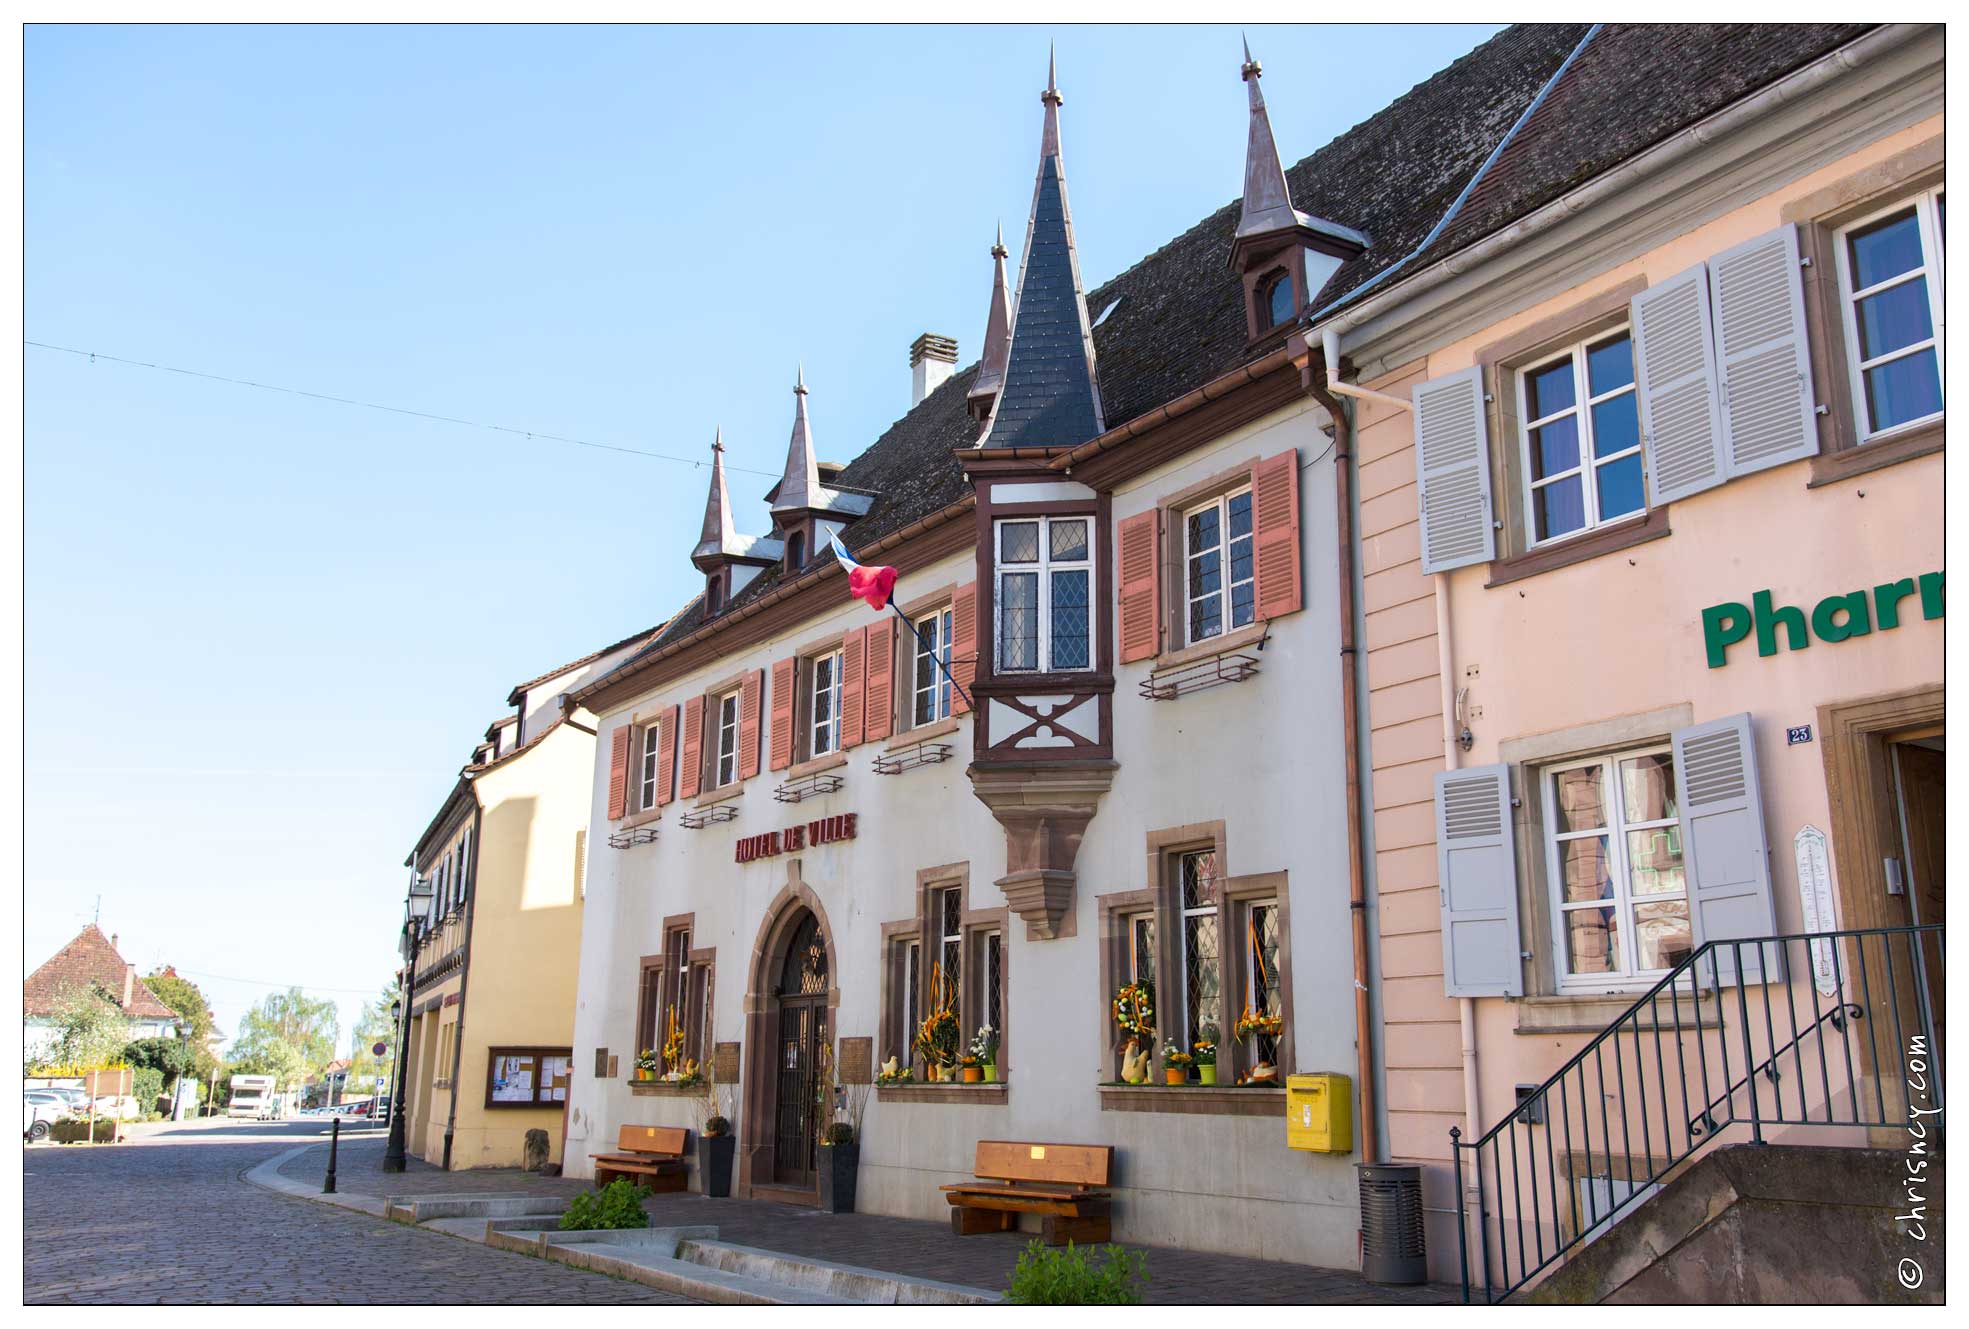 20170406-003_7466-Eguisheim_Hotel_de_ville.jpg